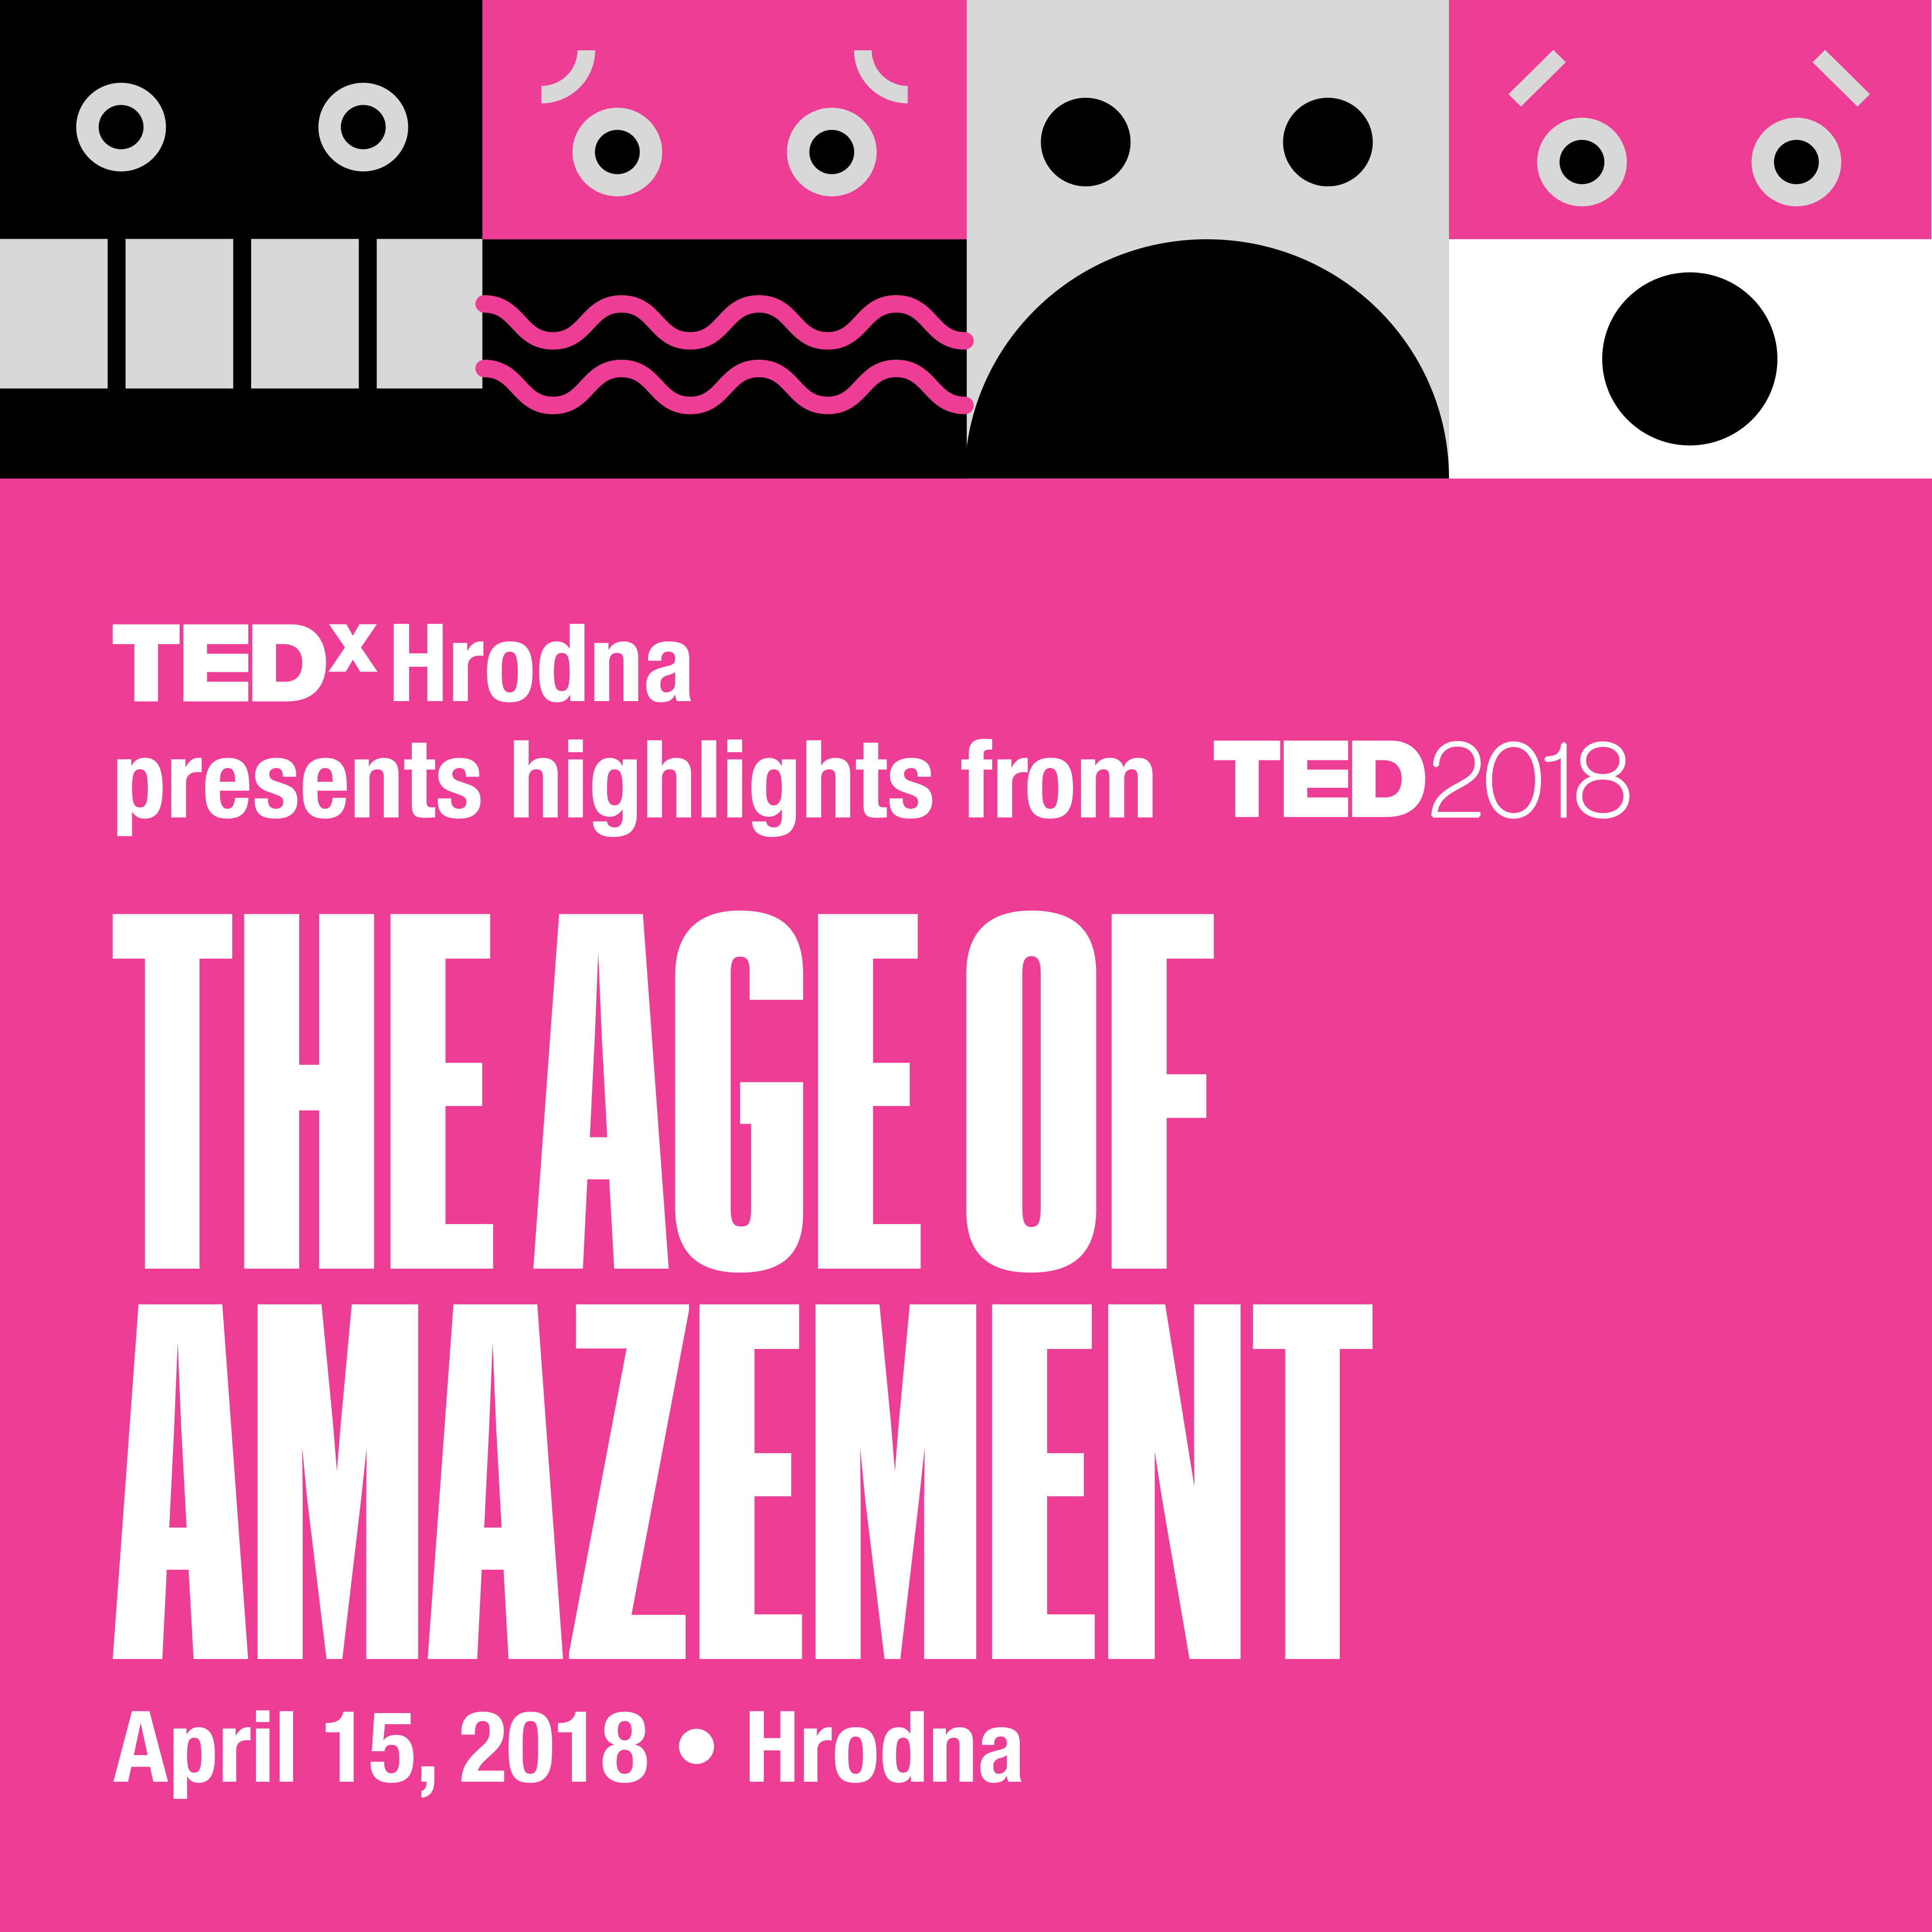 "Час здзіўлення": у Гродне пакажуць прамую трансляцыю TED-канферэнцыі з Ванкувера